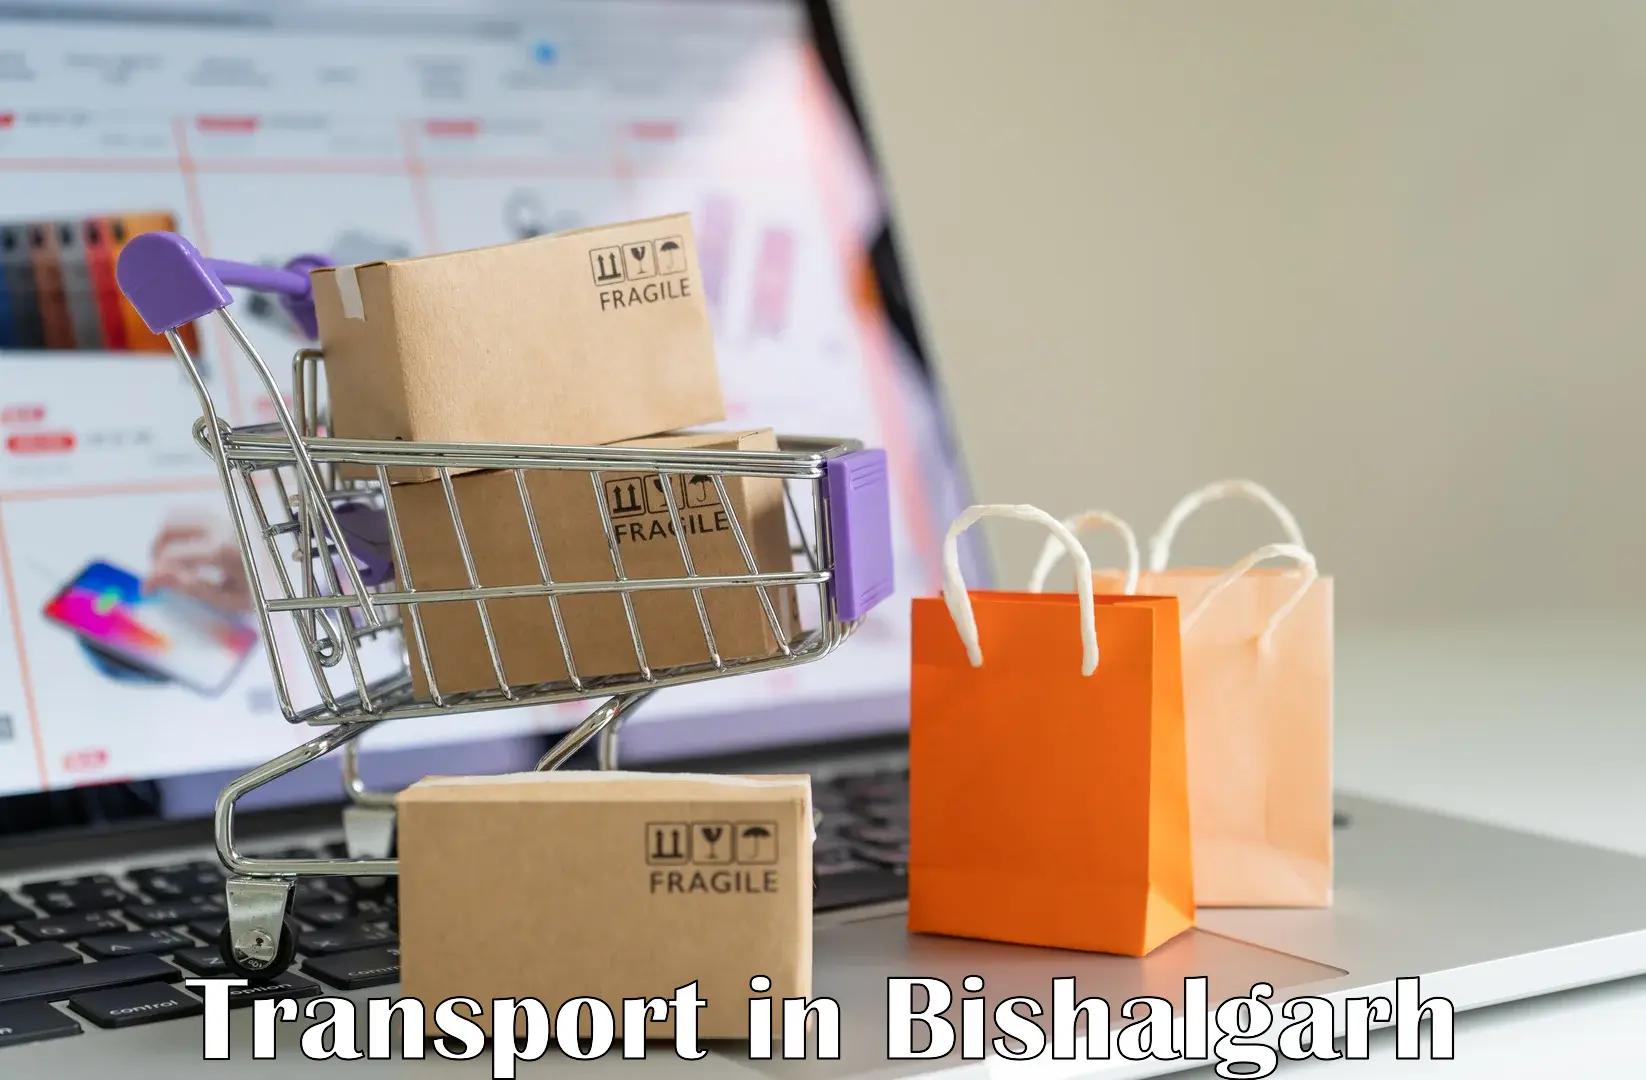 Online transport in Bishalgarh